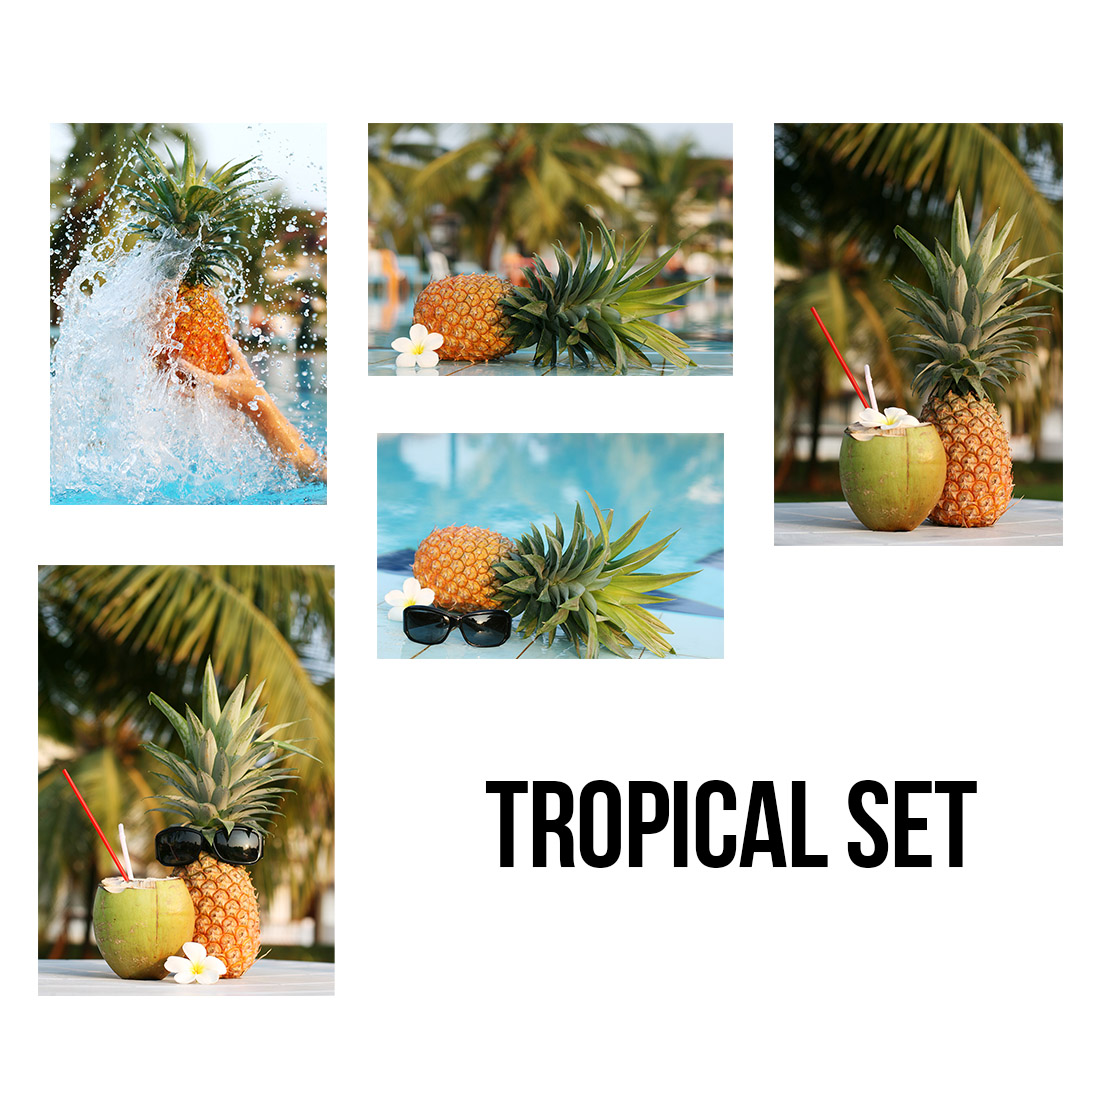 Tropical Set Photos presentation.